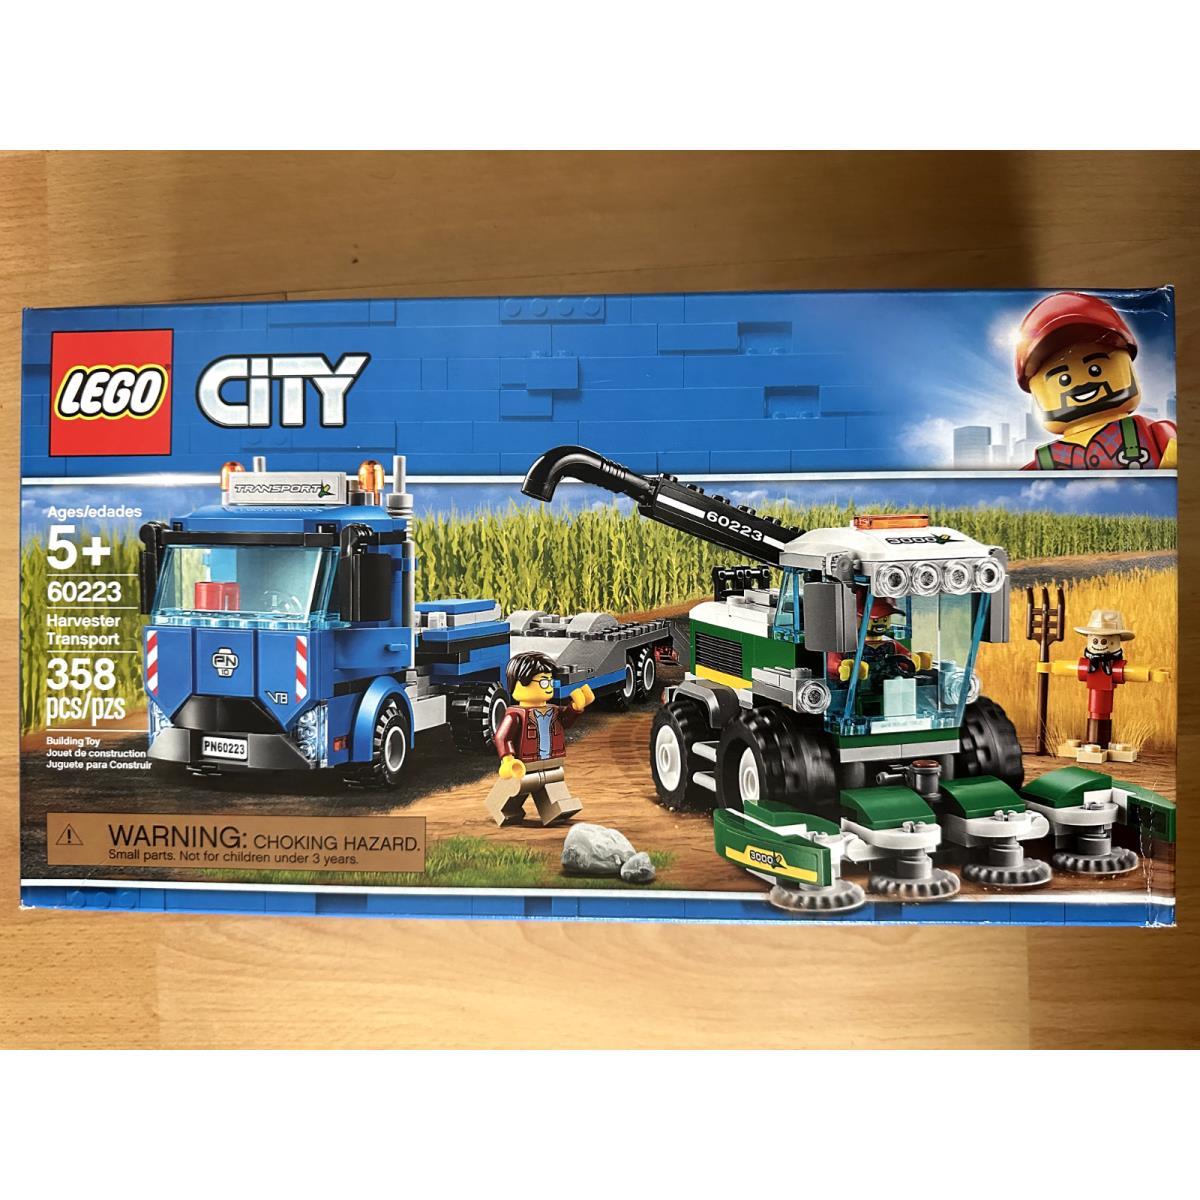 Lego City Toy Set 60223 Harvester Transport Nisb